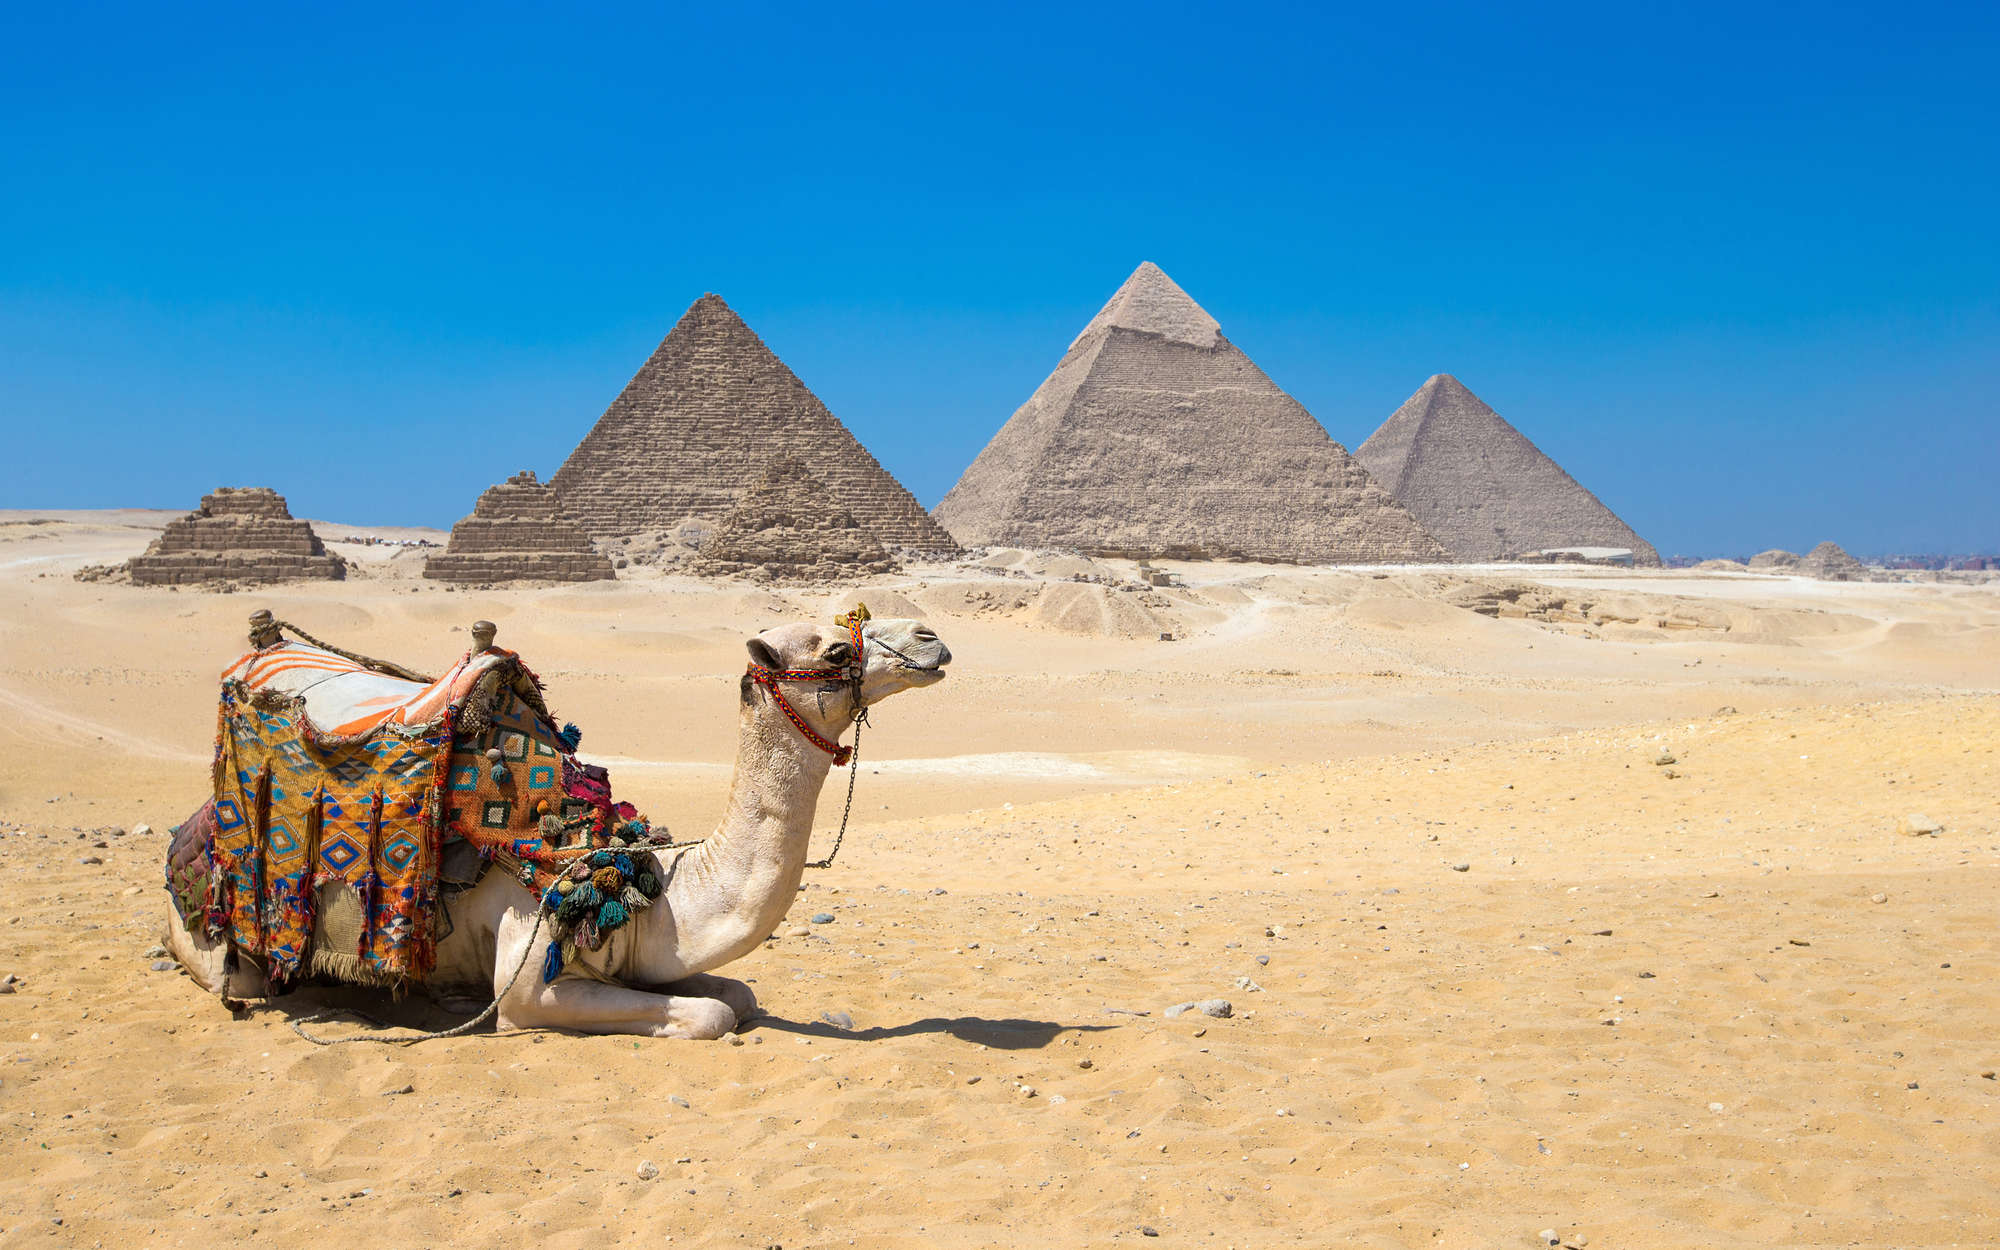             papiers peints à impression numérique Pyramides de Gizeh avec chameau - intissé structuré
        